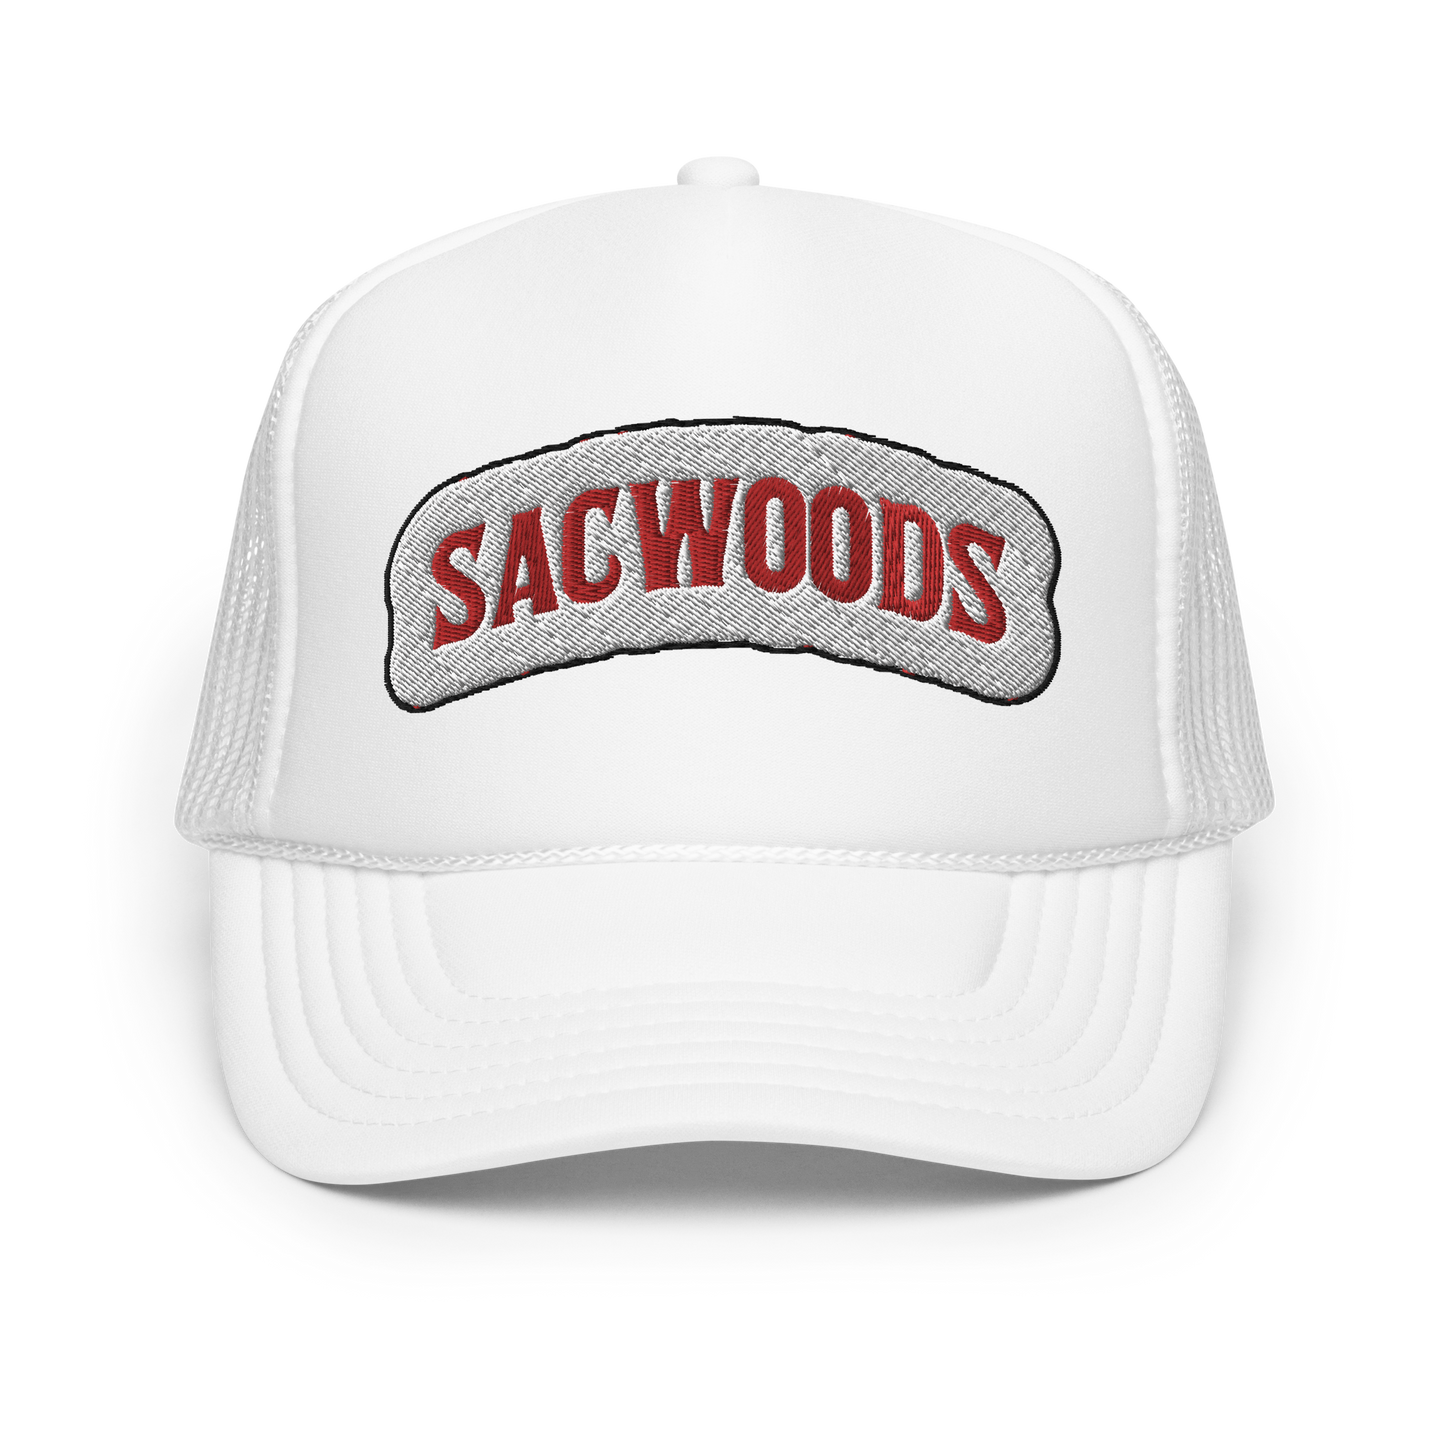 ATZ "Sacwoods" Foam trucker hat